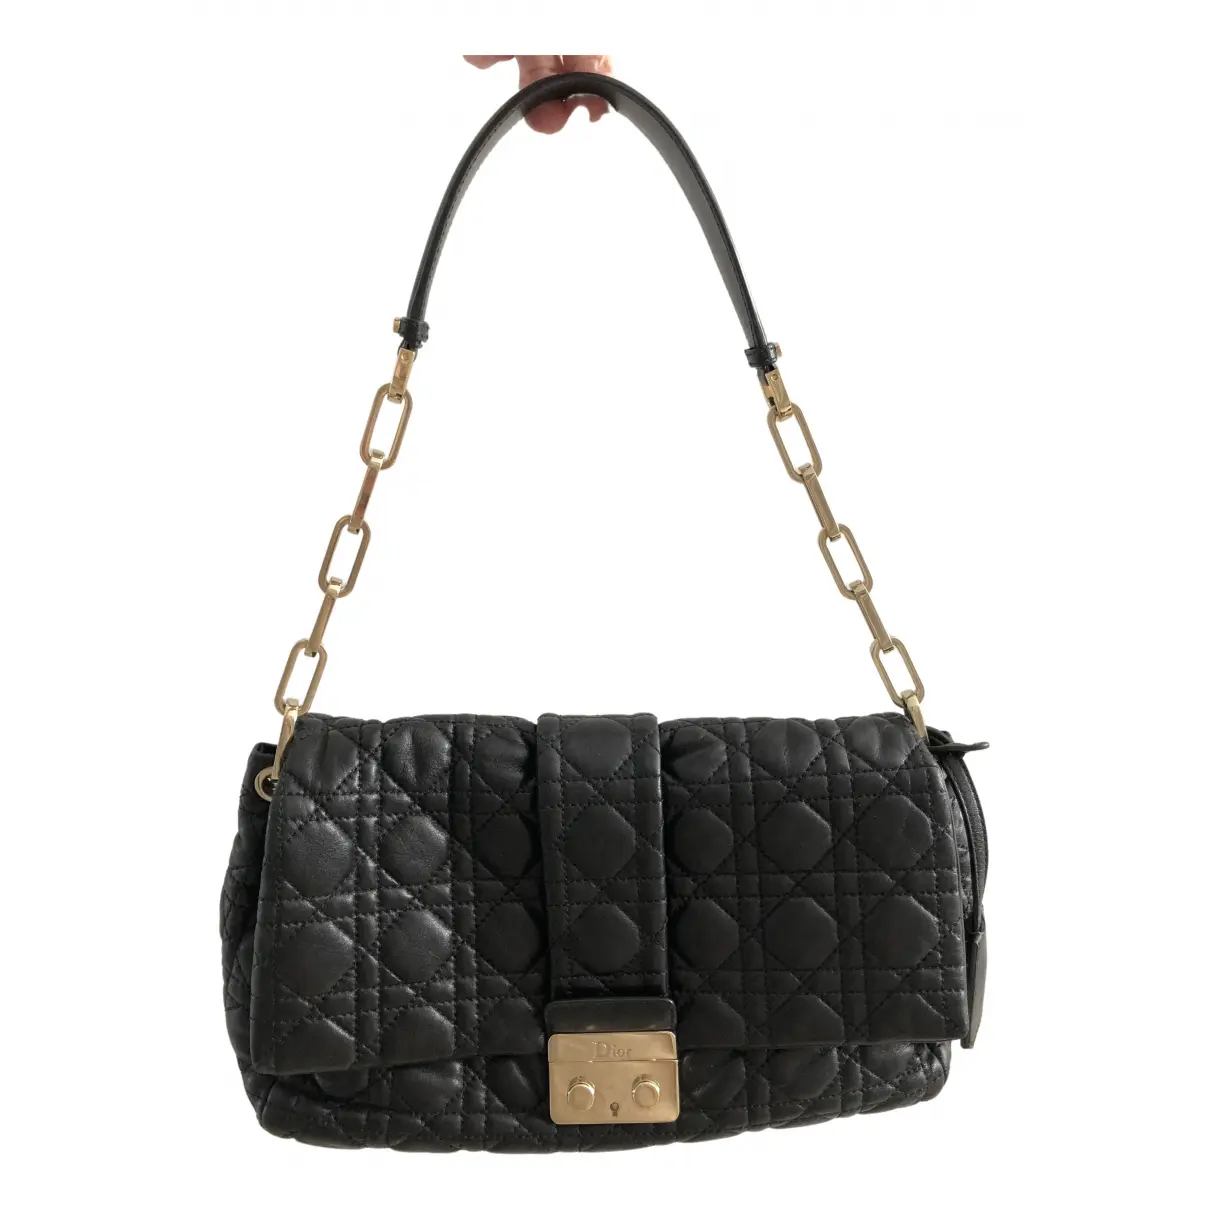 Miss Dior leather handbag Dior - Vintage